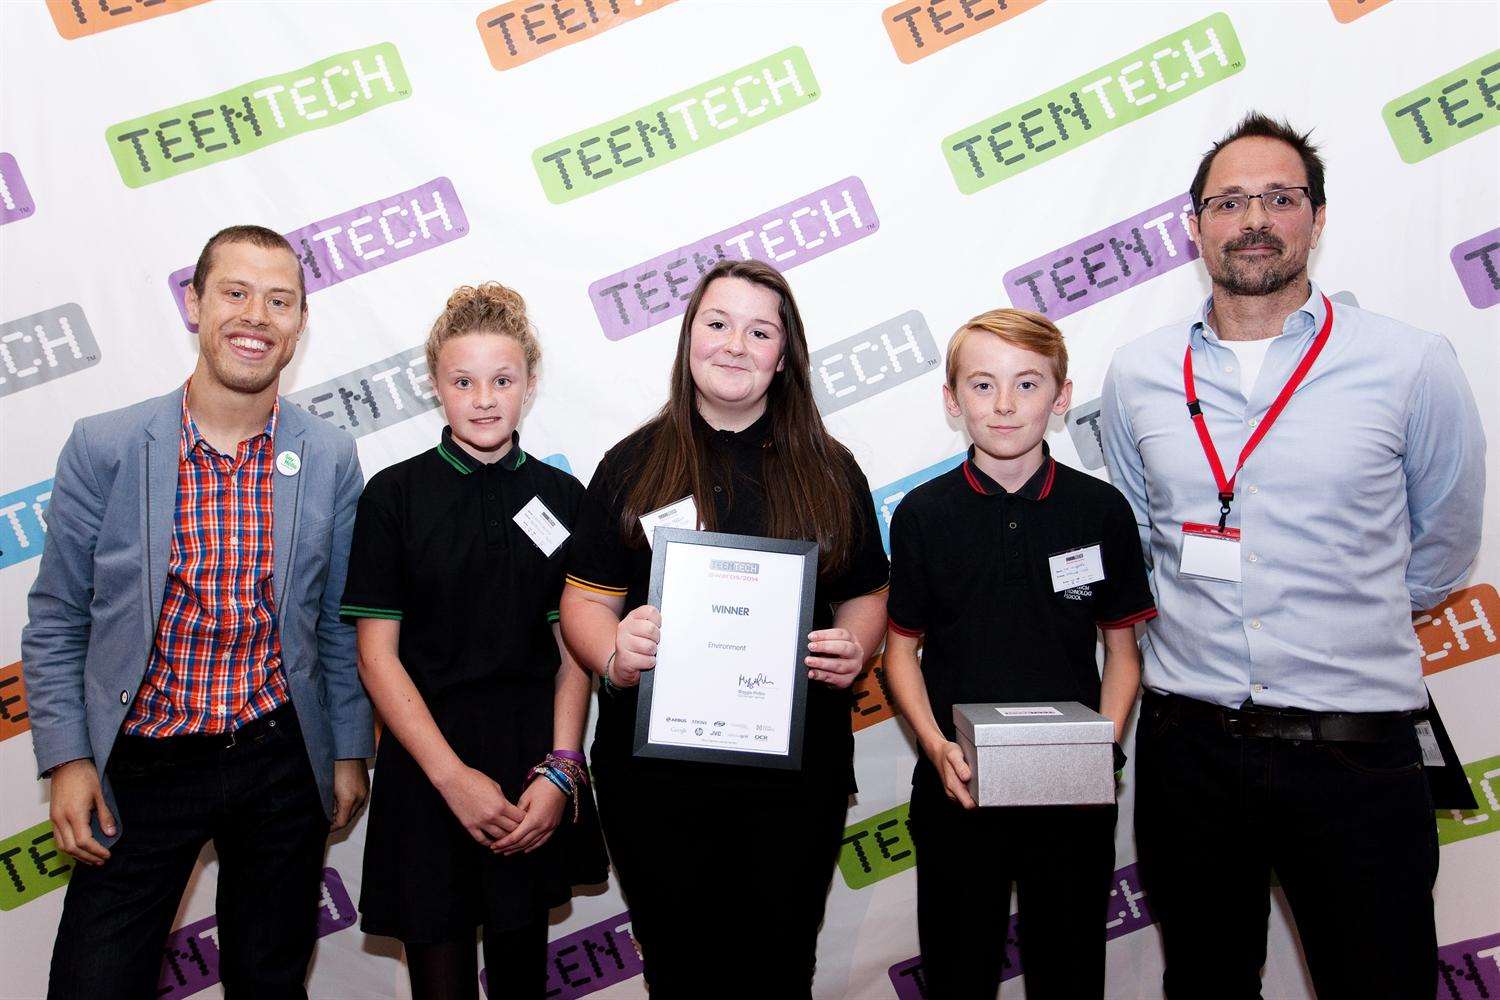 Lauren Kemp, Kaitlan Hopper and Joe Griffiths receiving their TeenTech award.